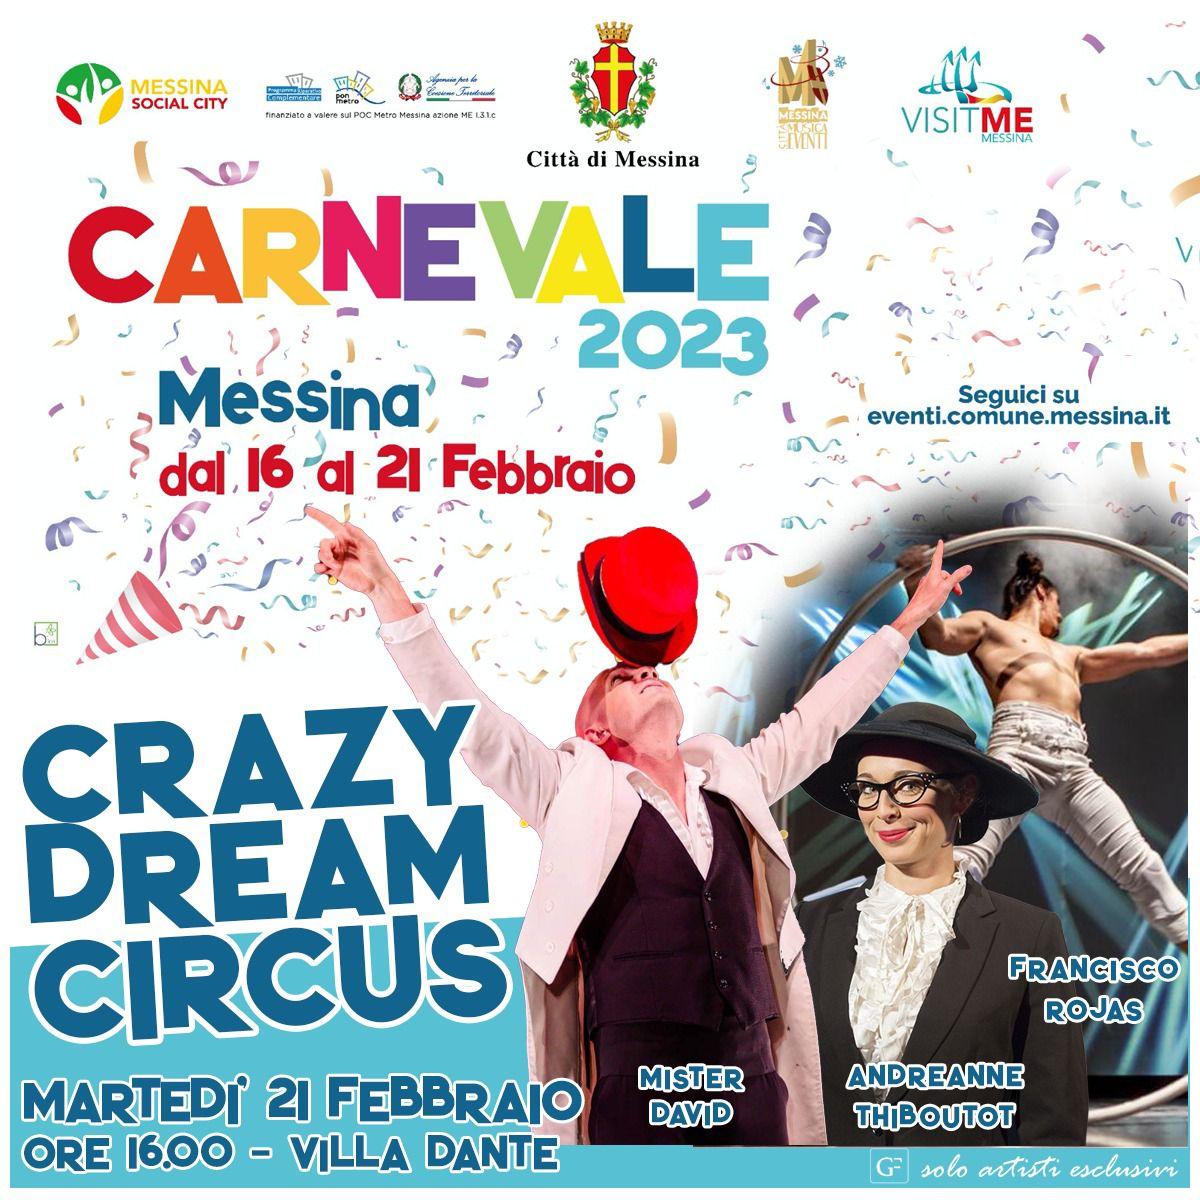 Lo spettacolo “Crazy Dreams Circus” conclude oggi il programma dell’edizione 2023 del Carnevale messinese